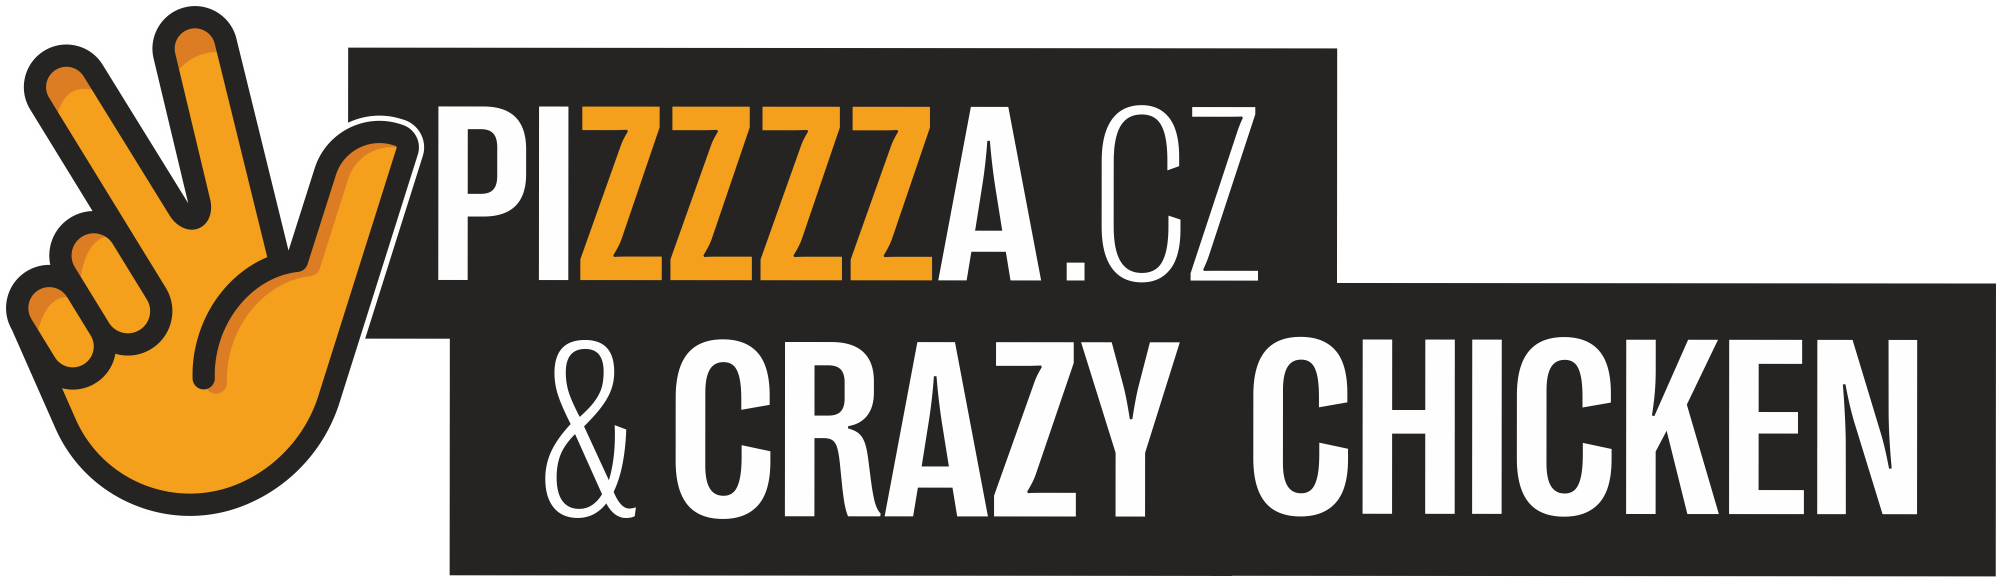 pizzzza.cz